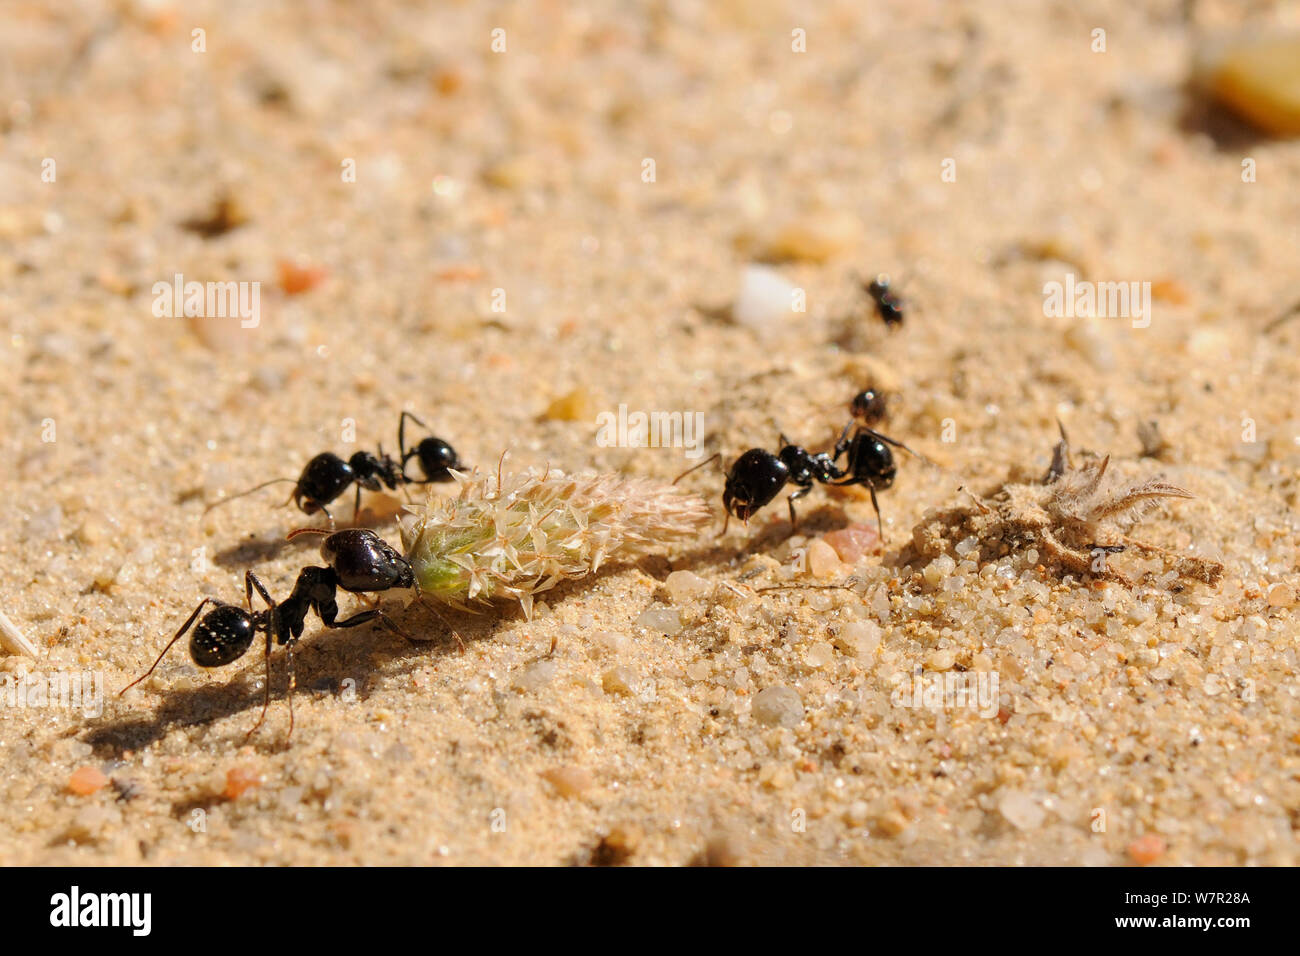 Mietitrice europea Ant (Messor sp.) grandi lavoratori cooperanti per trascinare un platano flowerhead verso il loro nido. Algarve, Portogallo, Giugno. Foto Stock